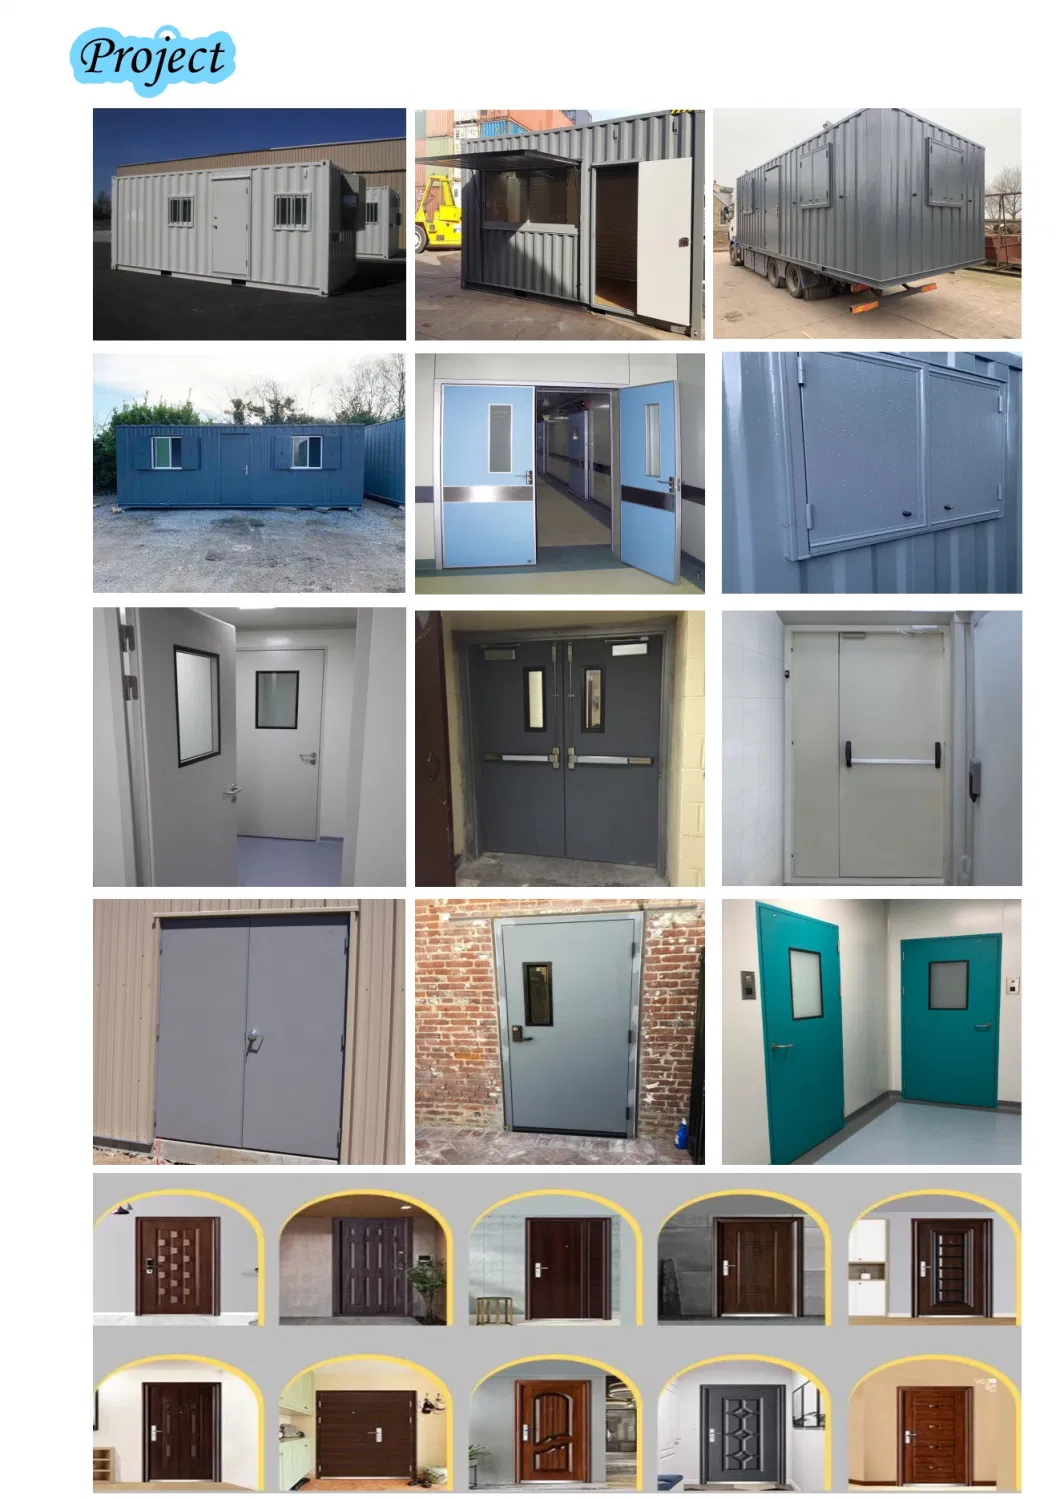 Modern Housing Keyless Door Lock Security Zinc Alloy Cylinder Door Lever Lockset with Handle